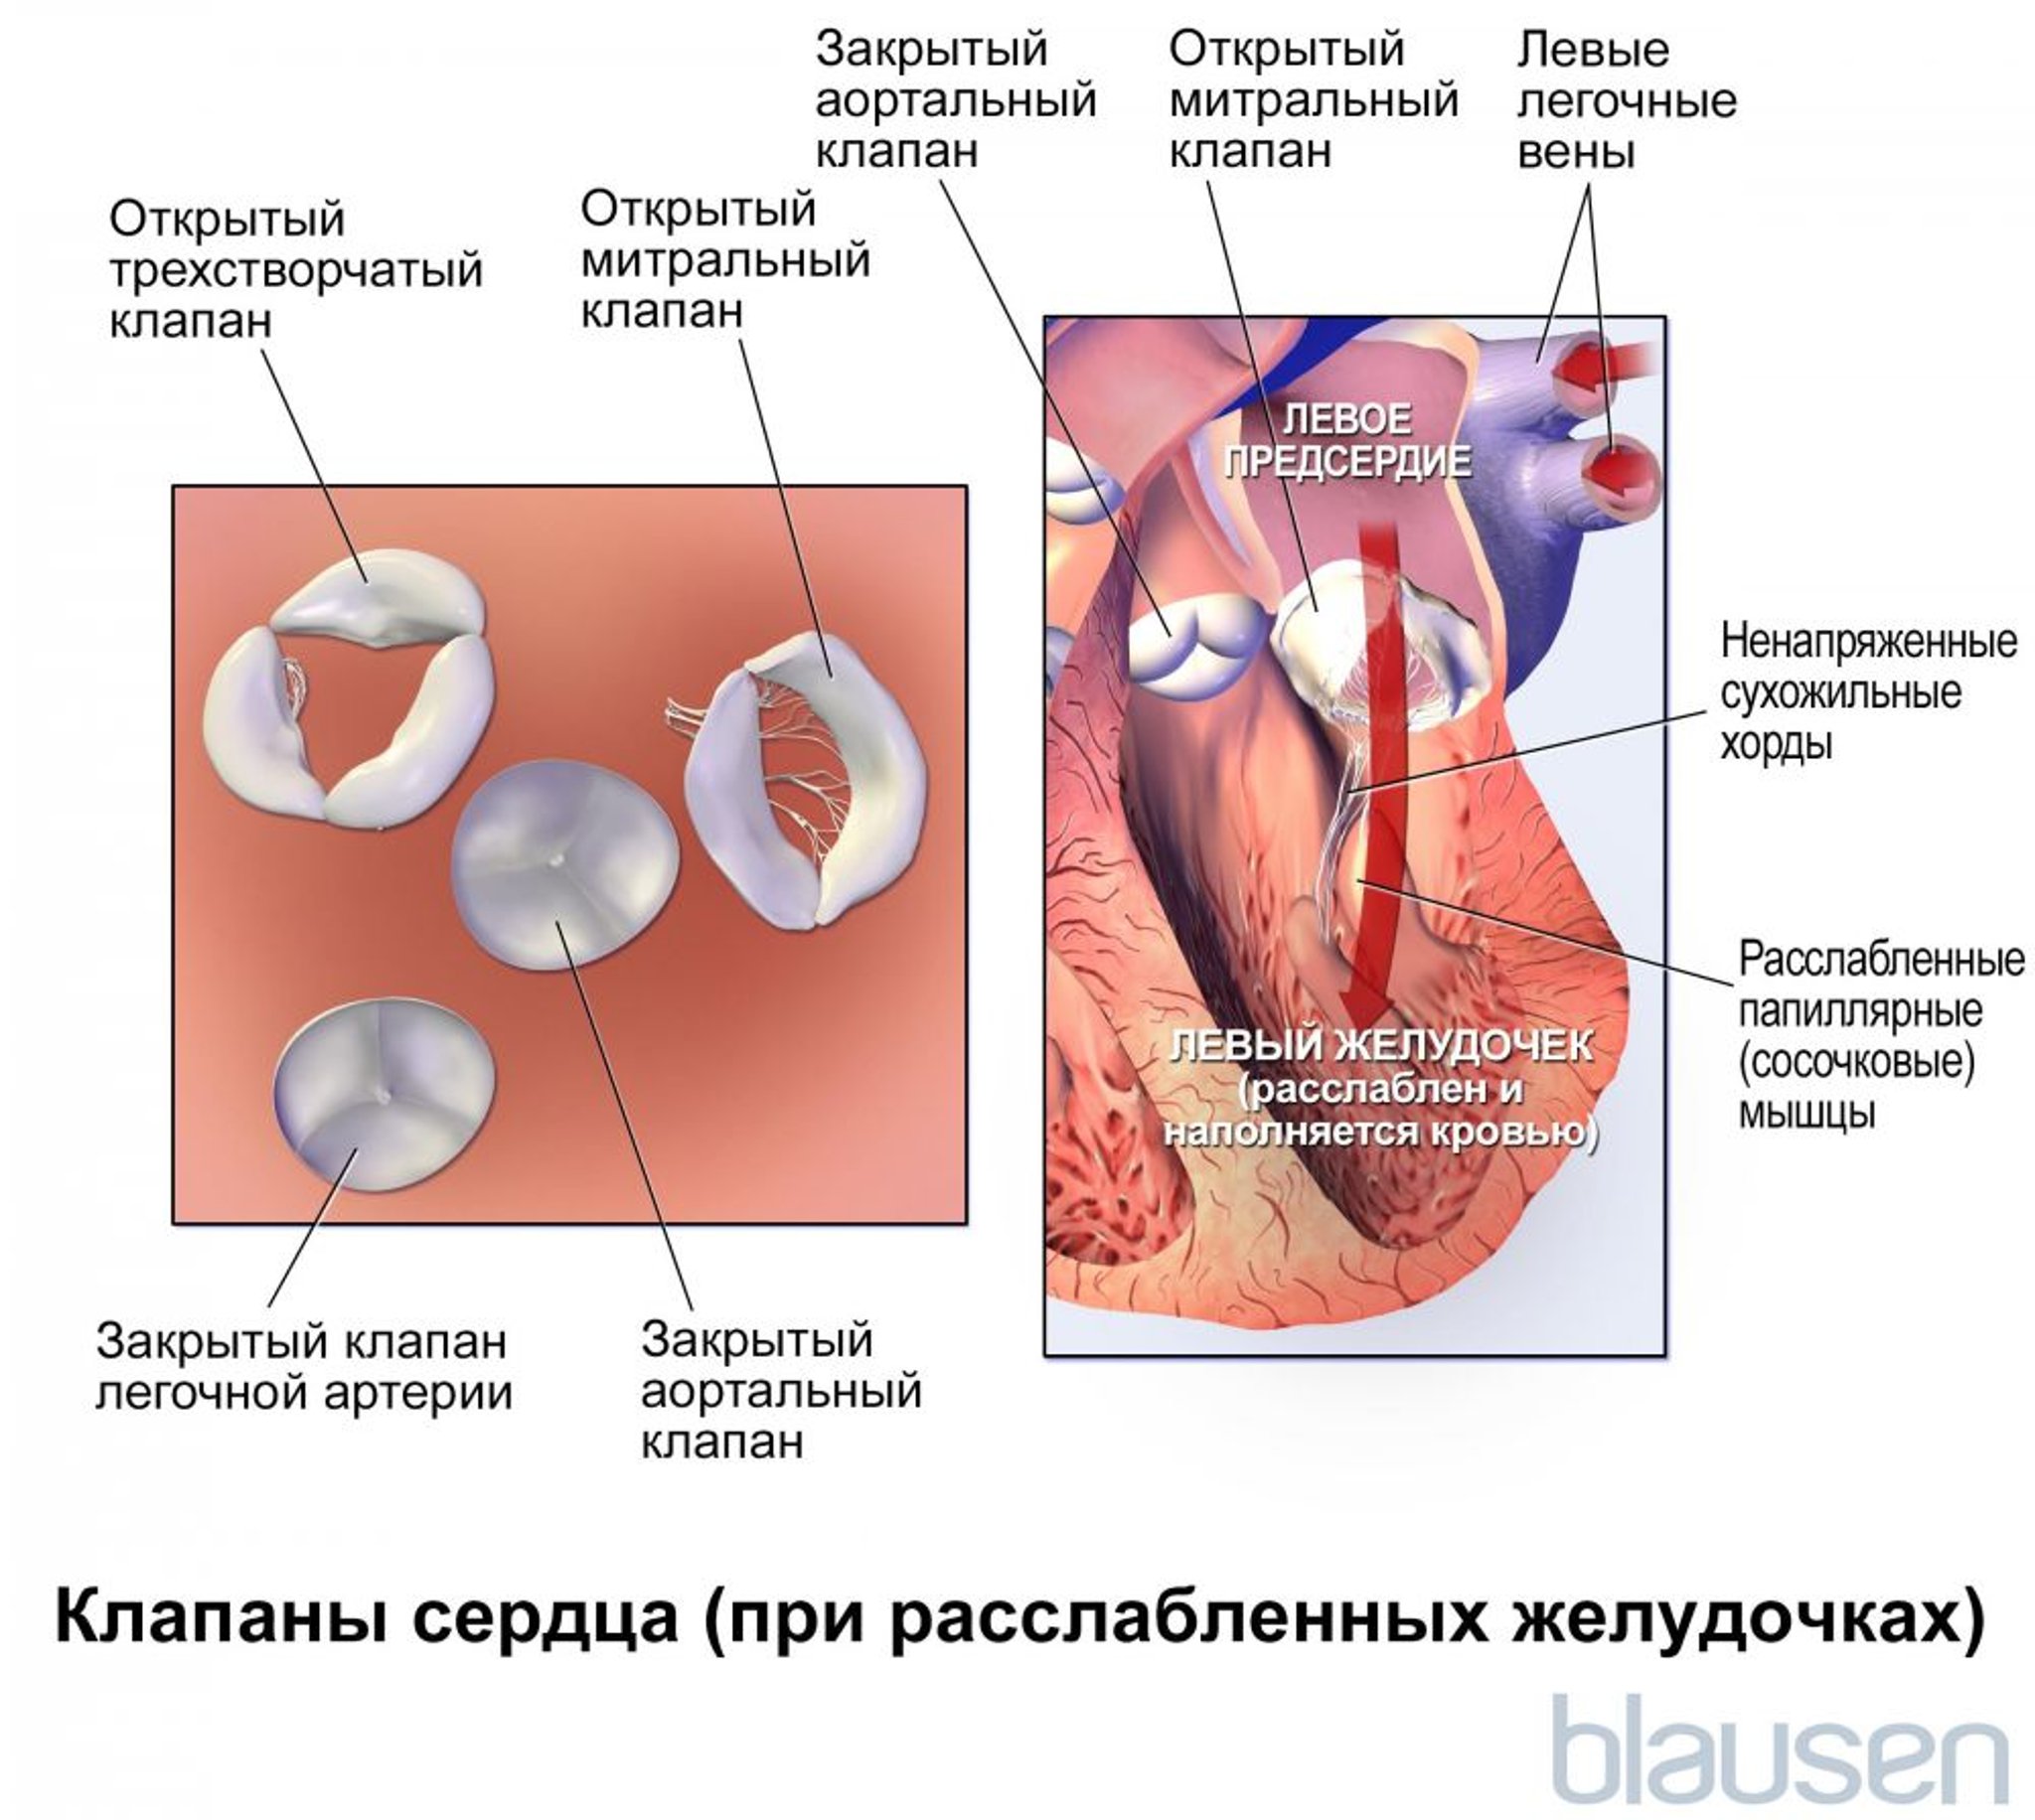 Клапаны сердца (при расслабленных желудочках)